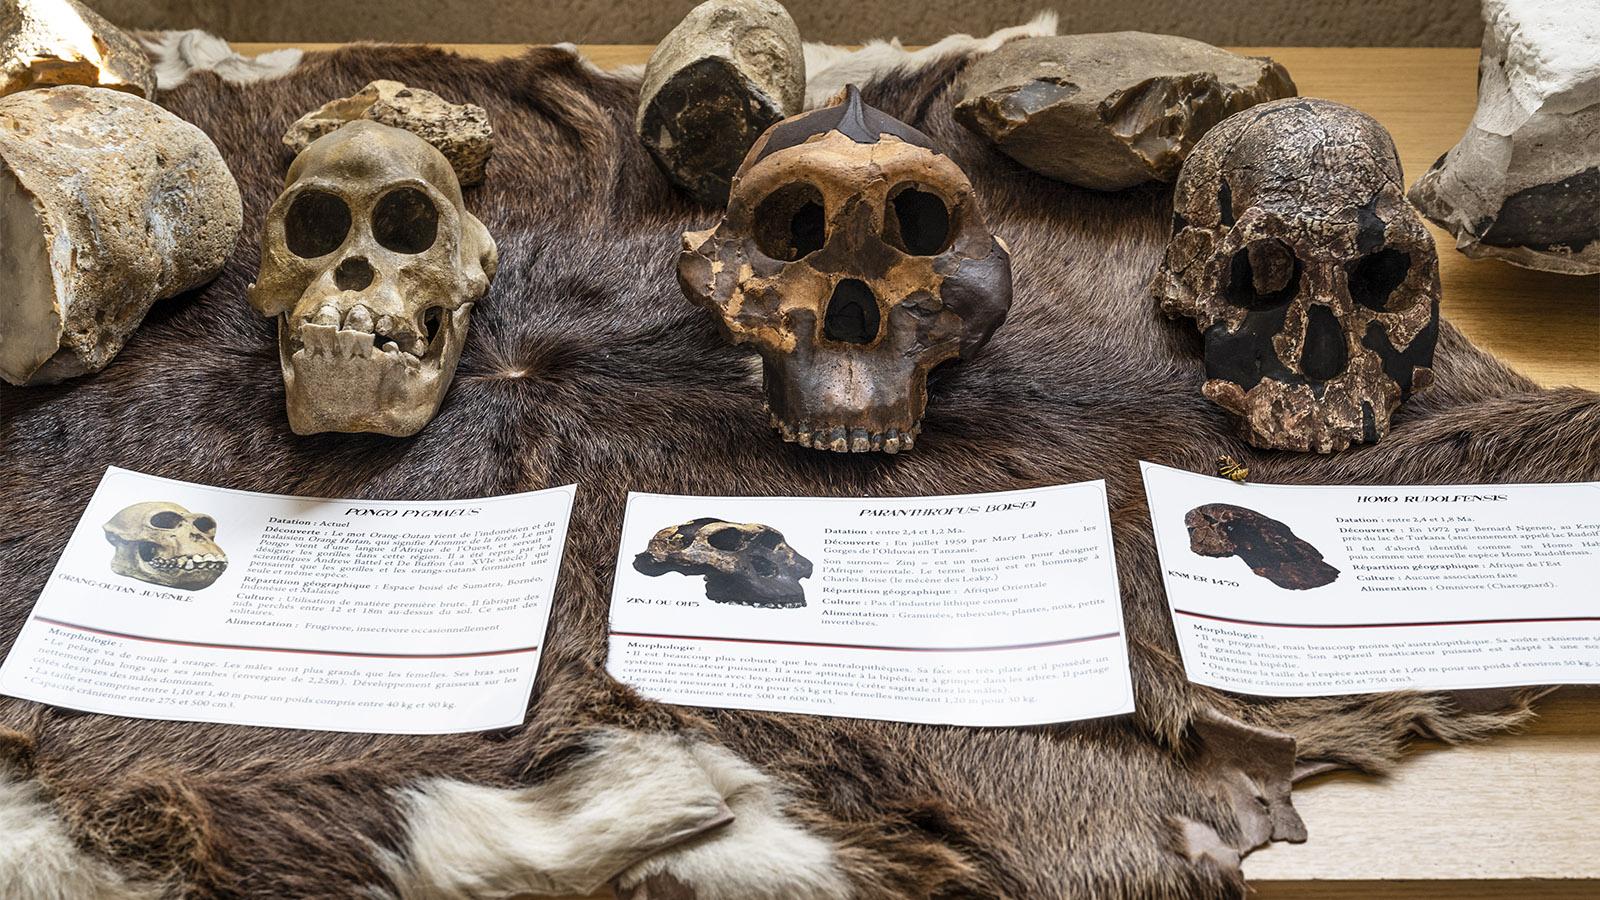 Musée de l'homme de Néandertal. Foto: Hilke Maunder